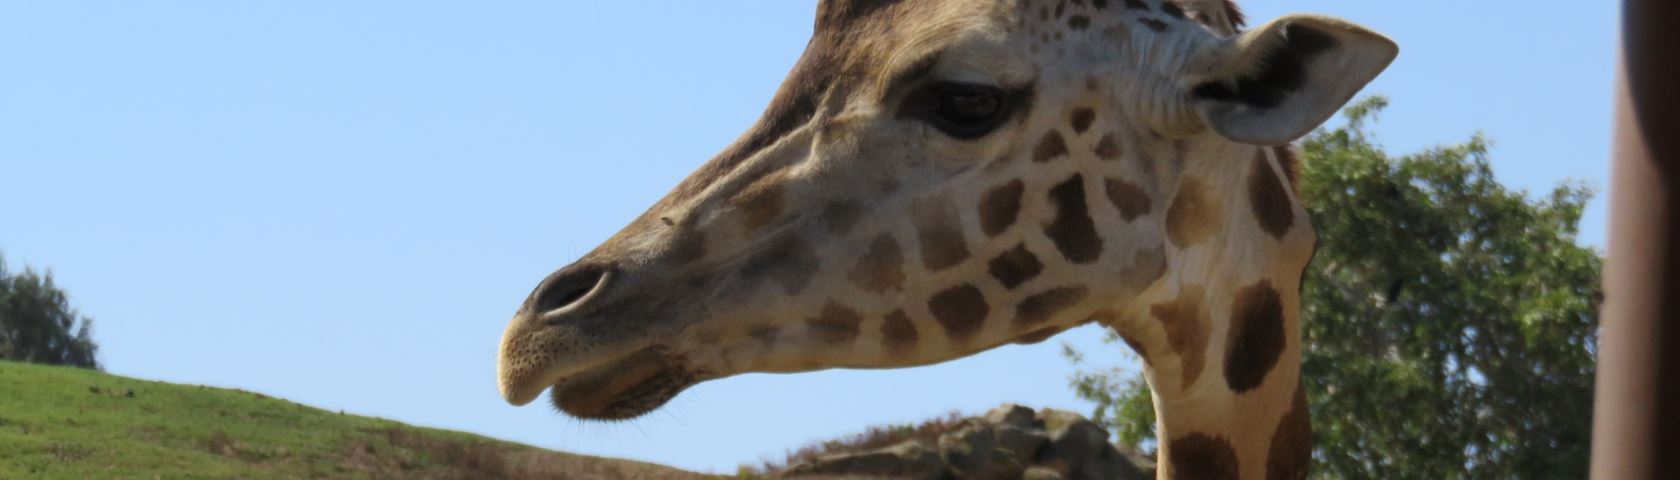 Giraffe on Safari